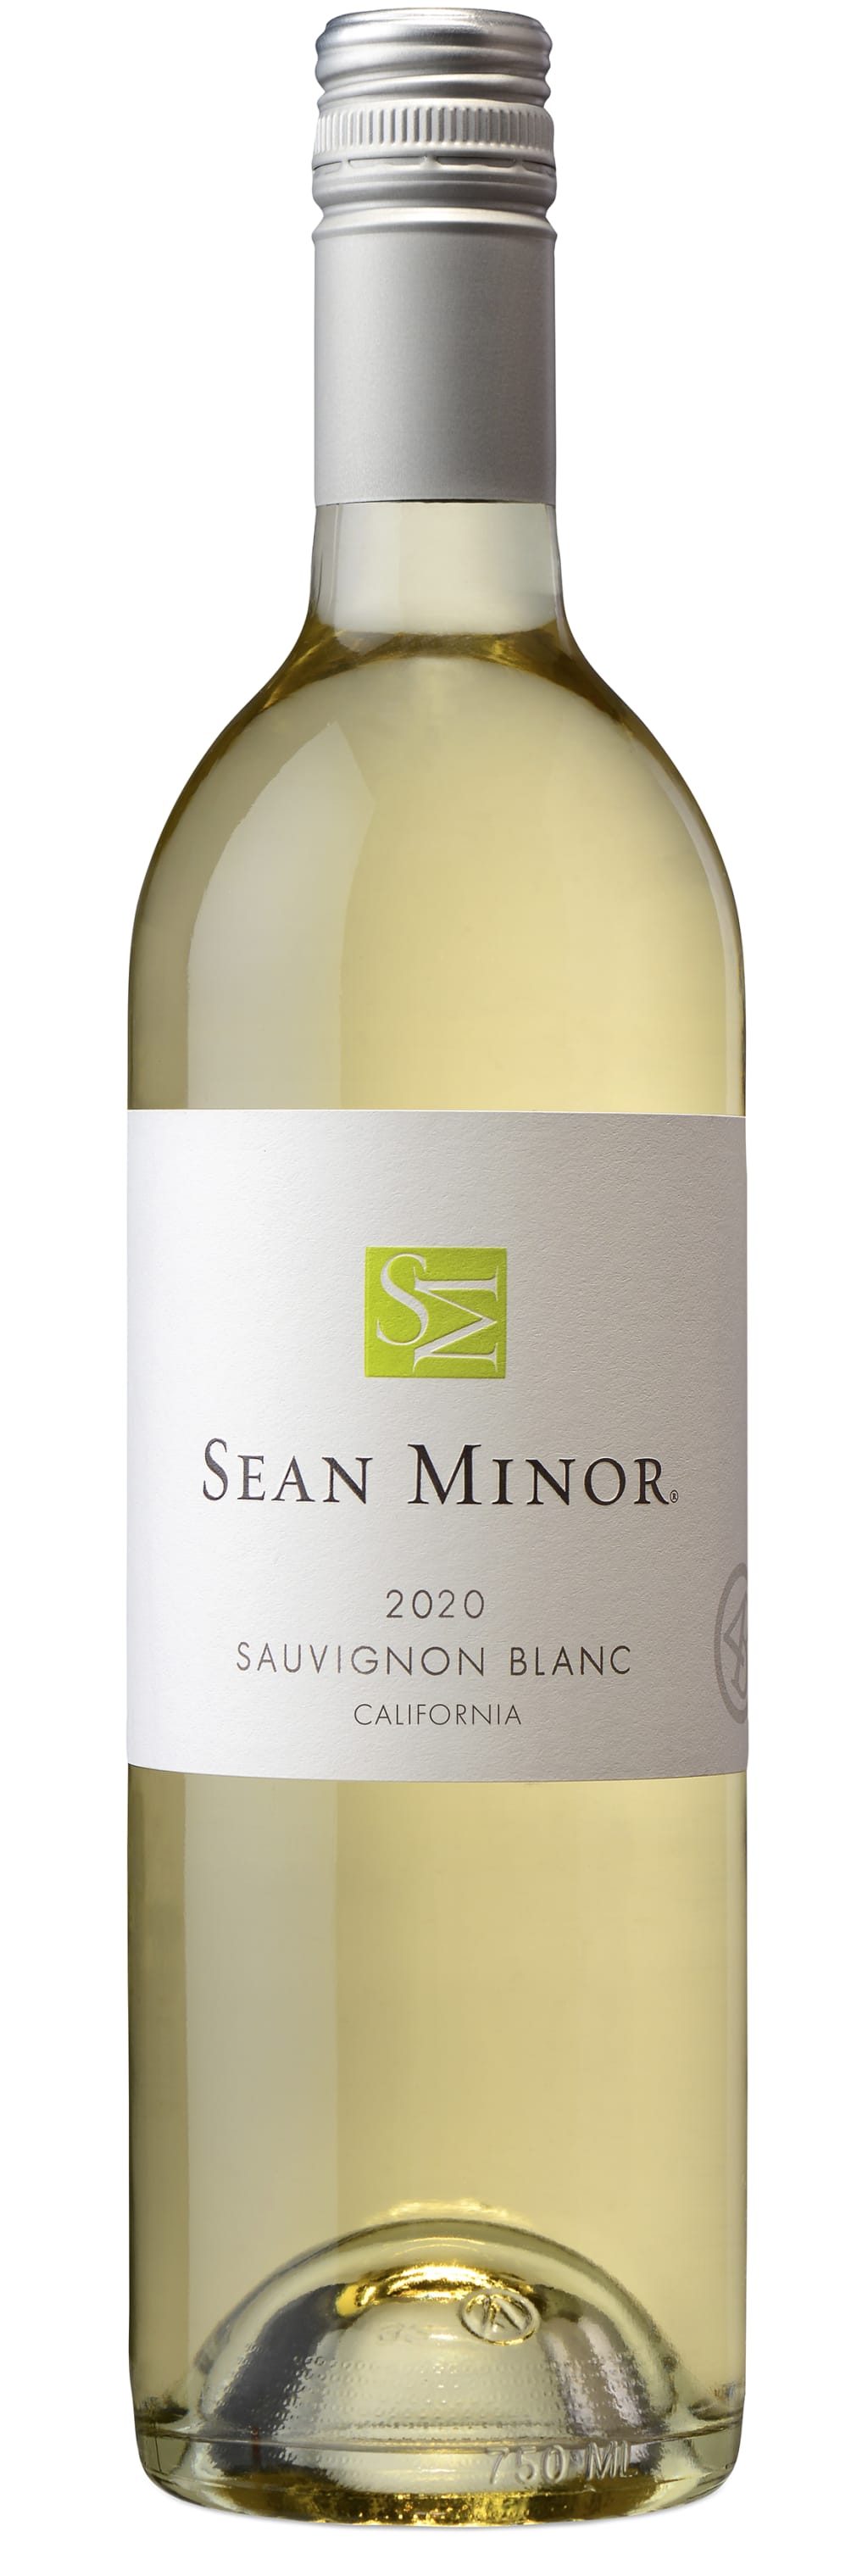 Sauvignon Blanc '4B - California', Sean Minor 2020